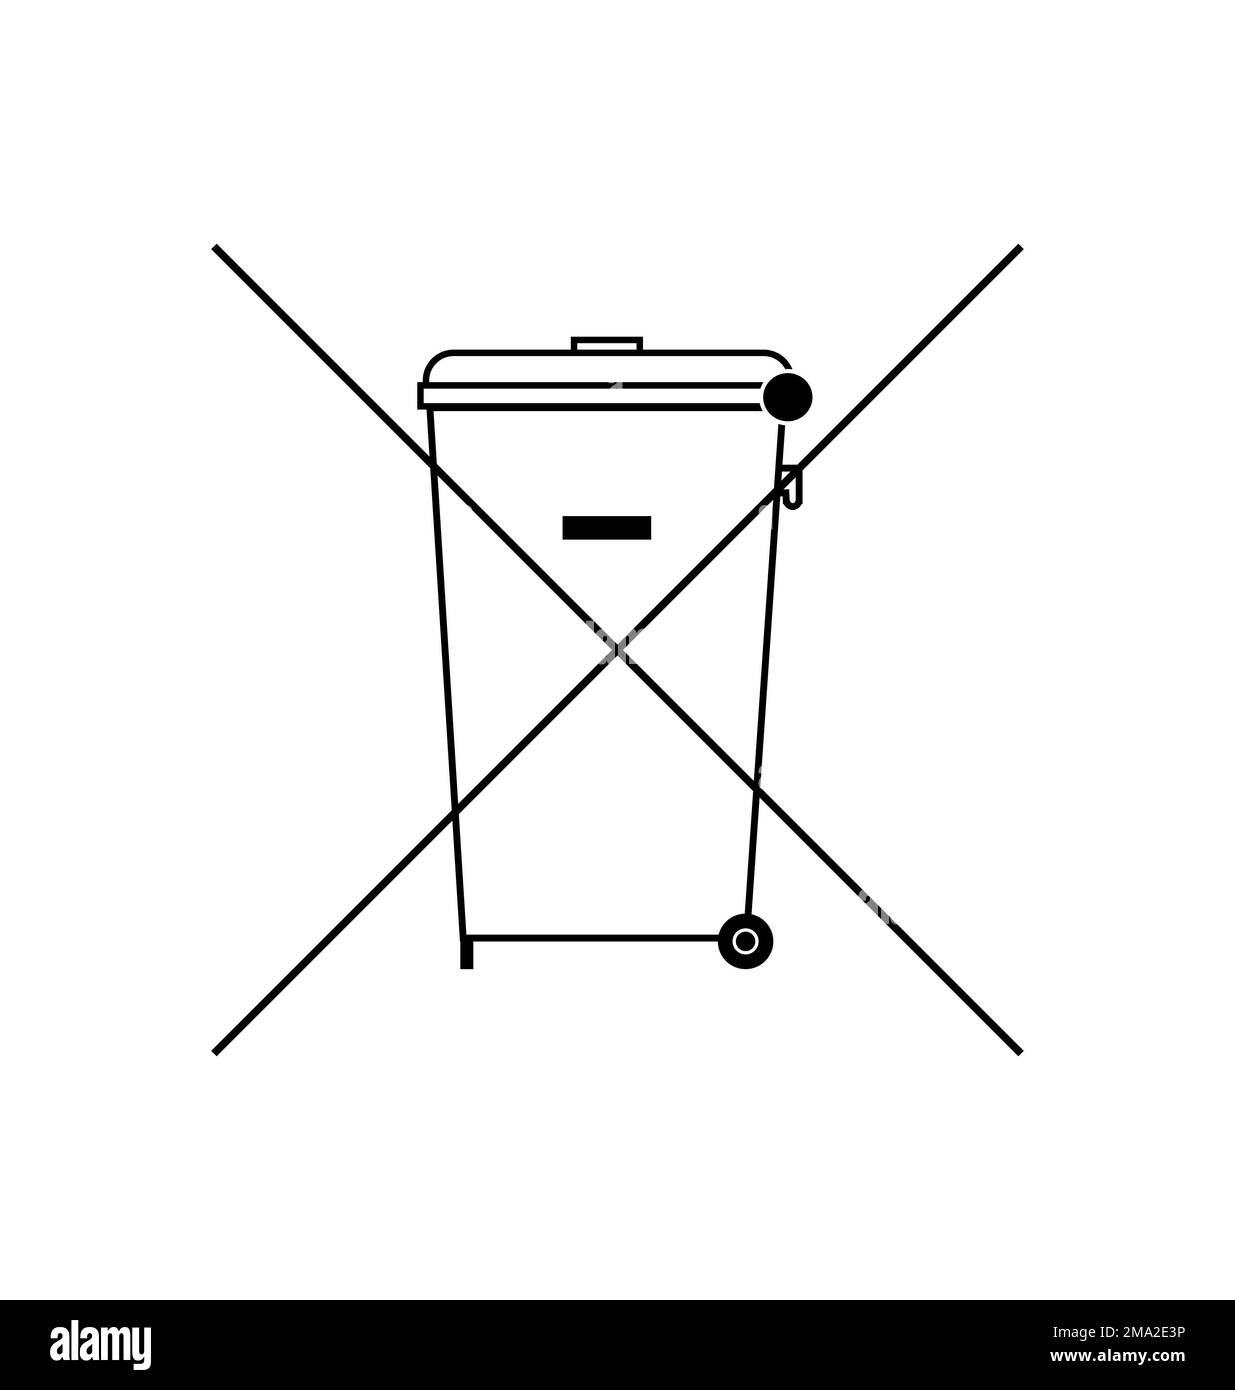 Logo de poubelle barrée Banque de photographies et d'images à haute  résolution - Alamy